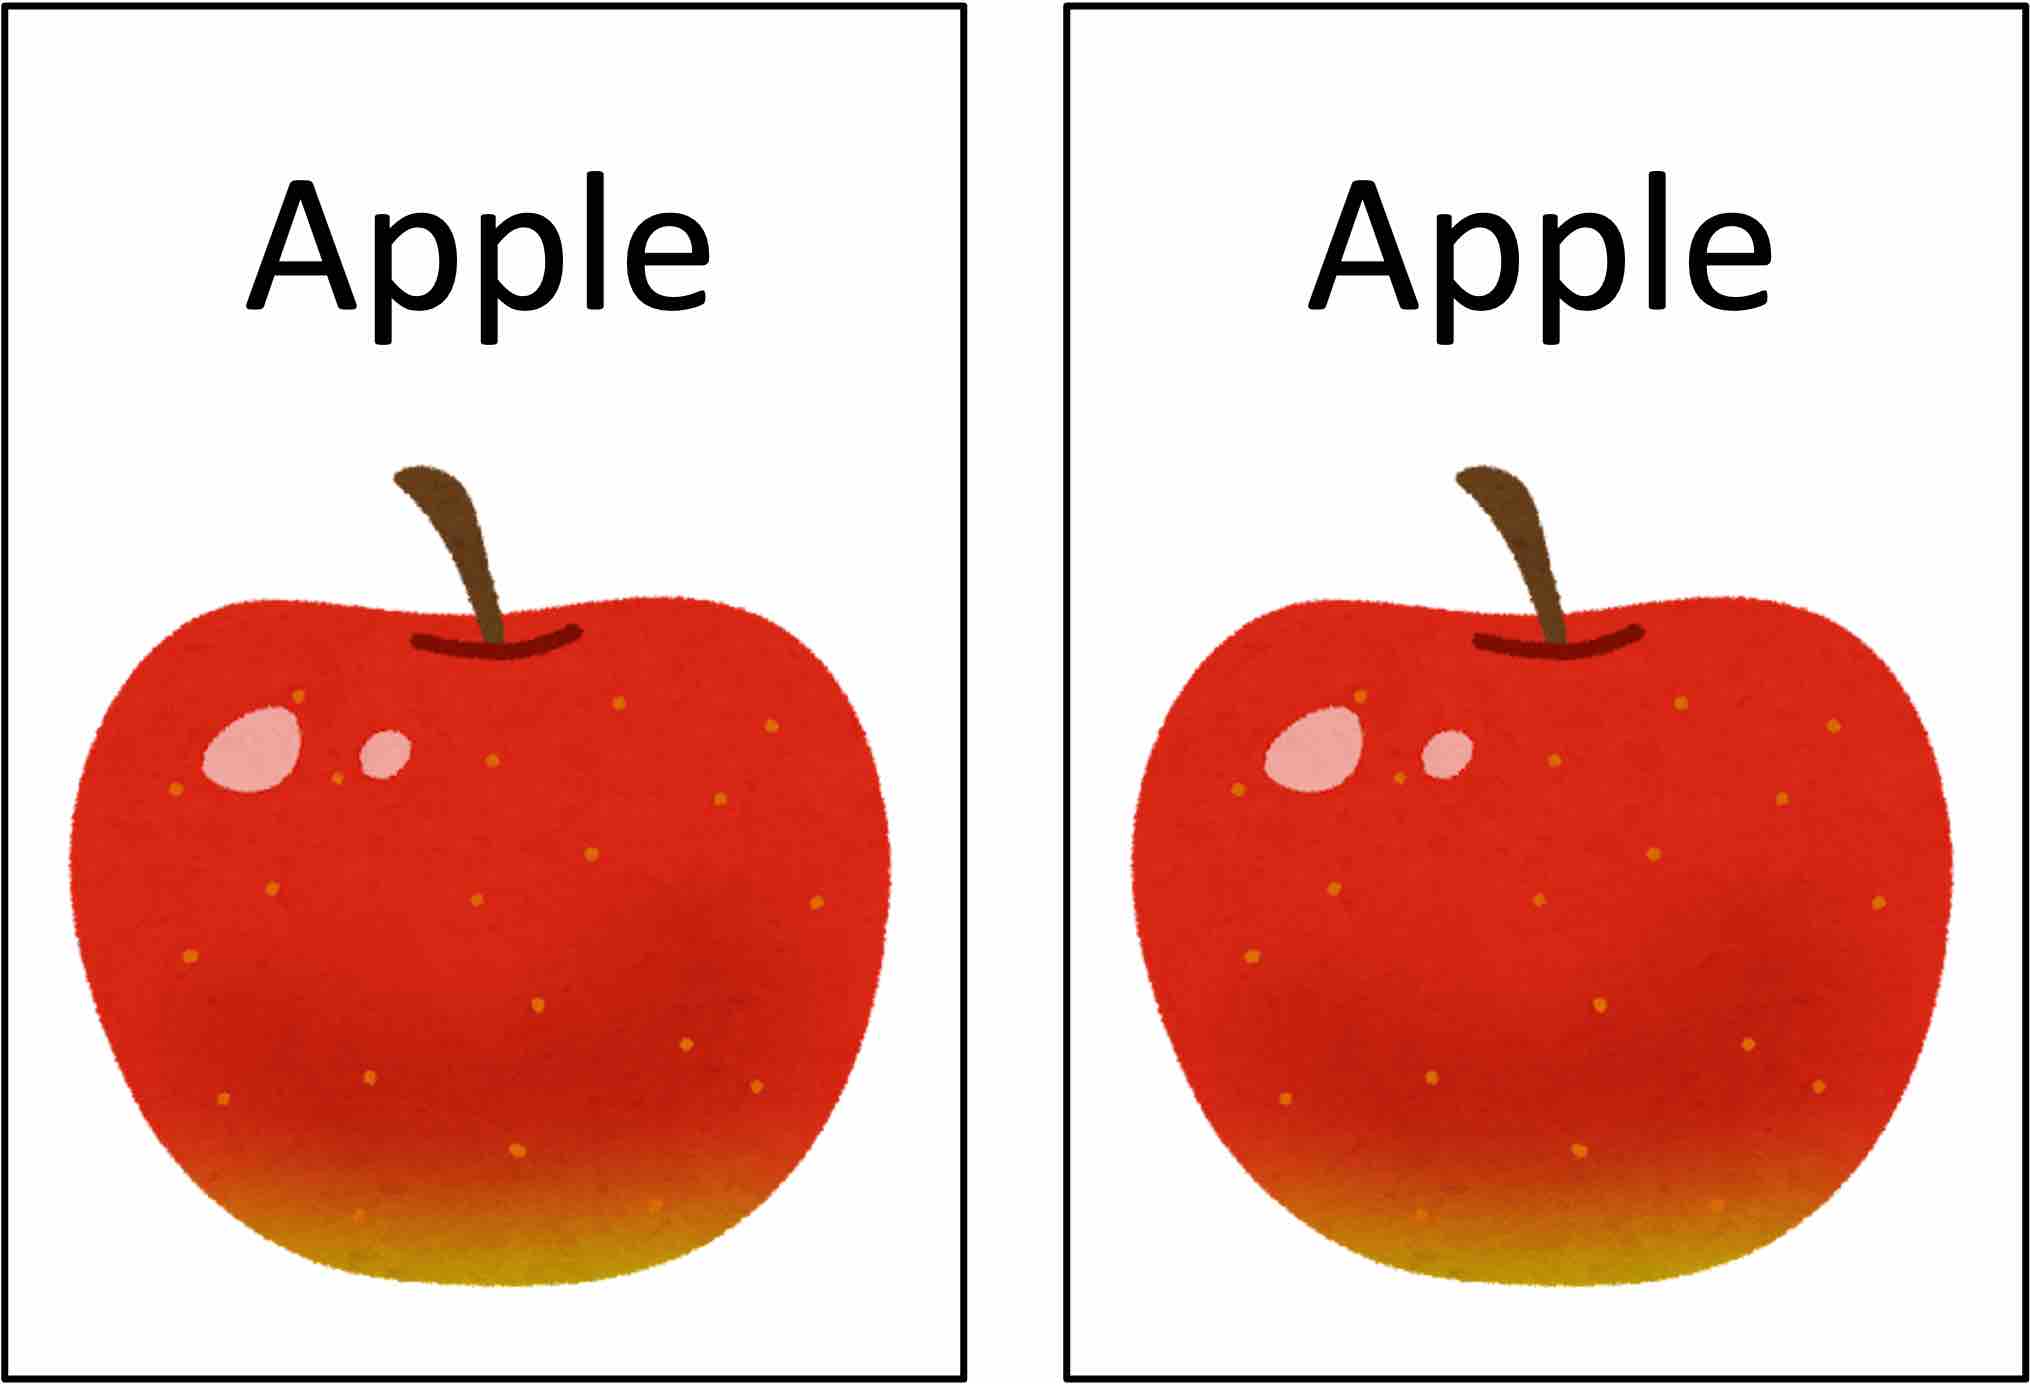 りんごのイラストと英単語Appleの両方が印刷されているカードのペア